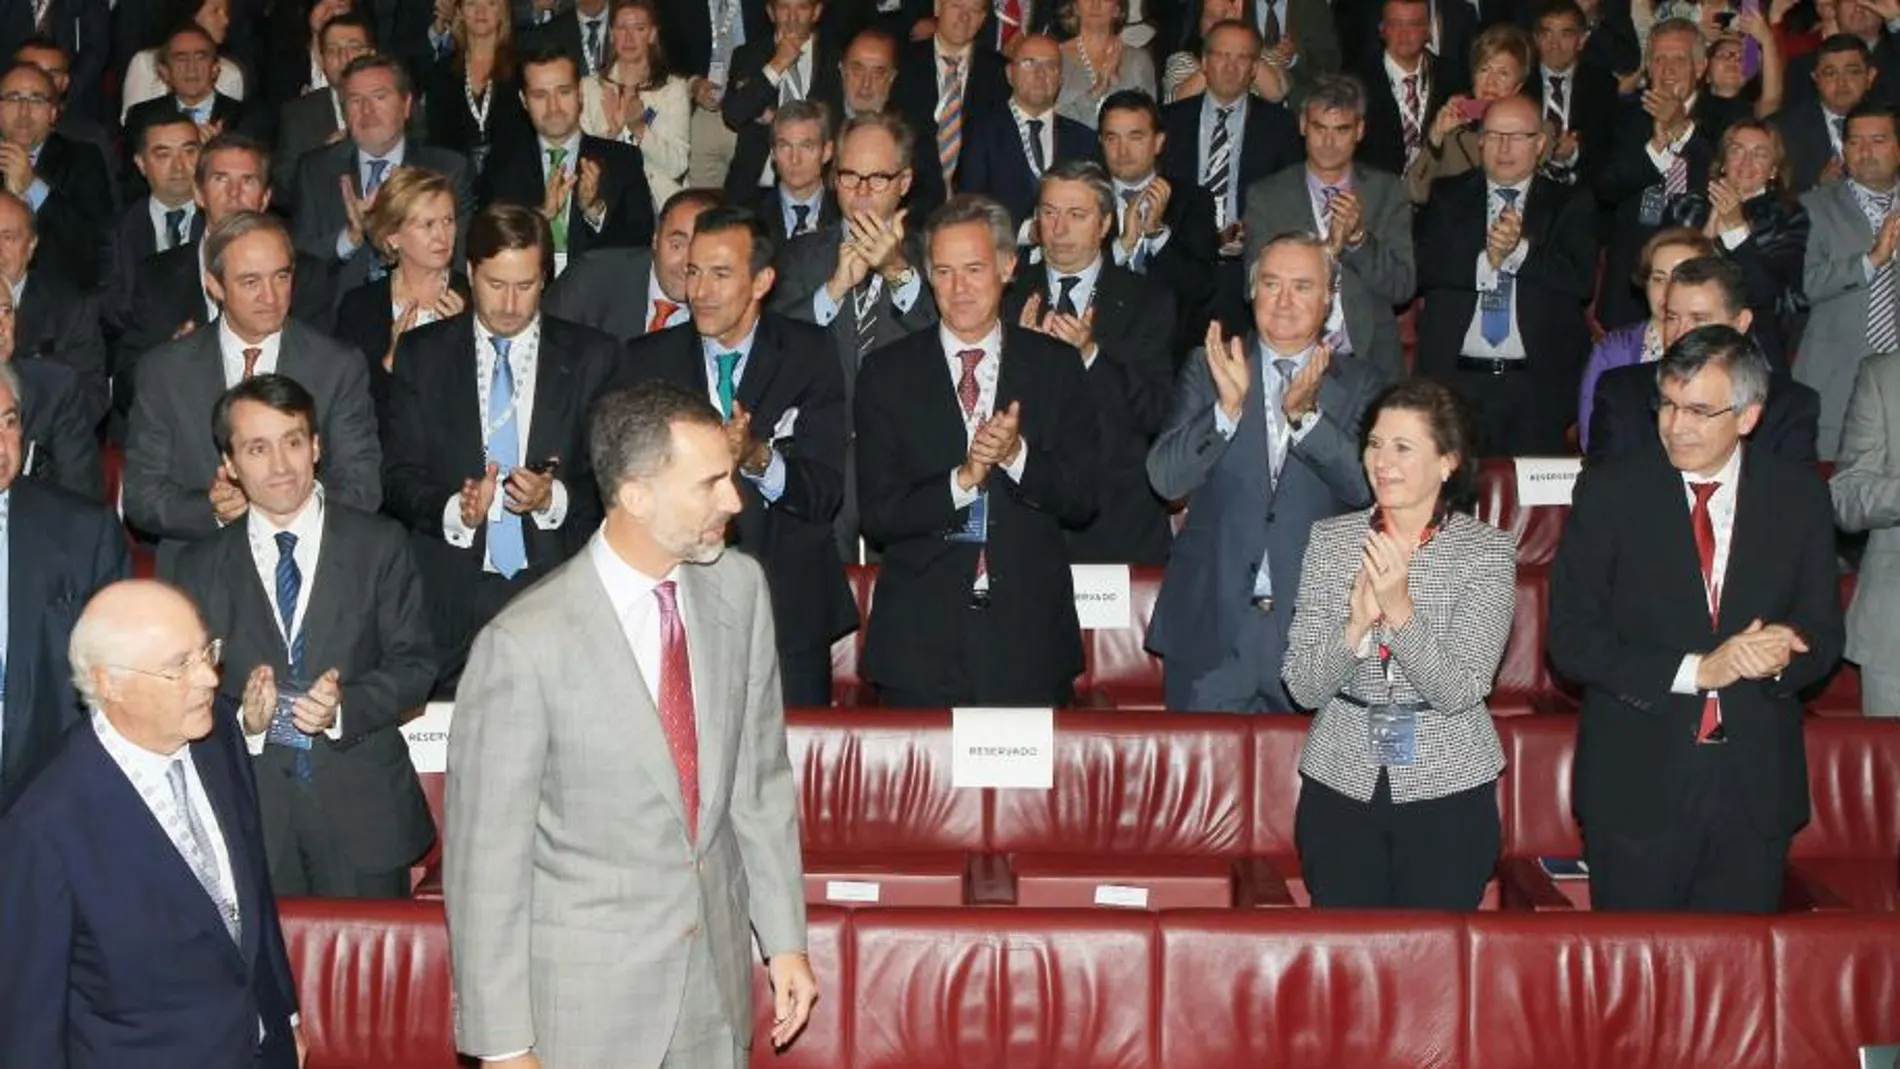 El Rey Felipe recibe el aplauso de los directivos y presidentes de empresas del III Congreso Nacional de Directivos, celebrado en Bilbao.